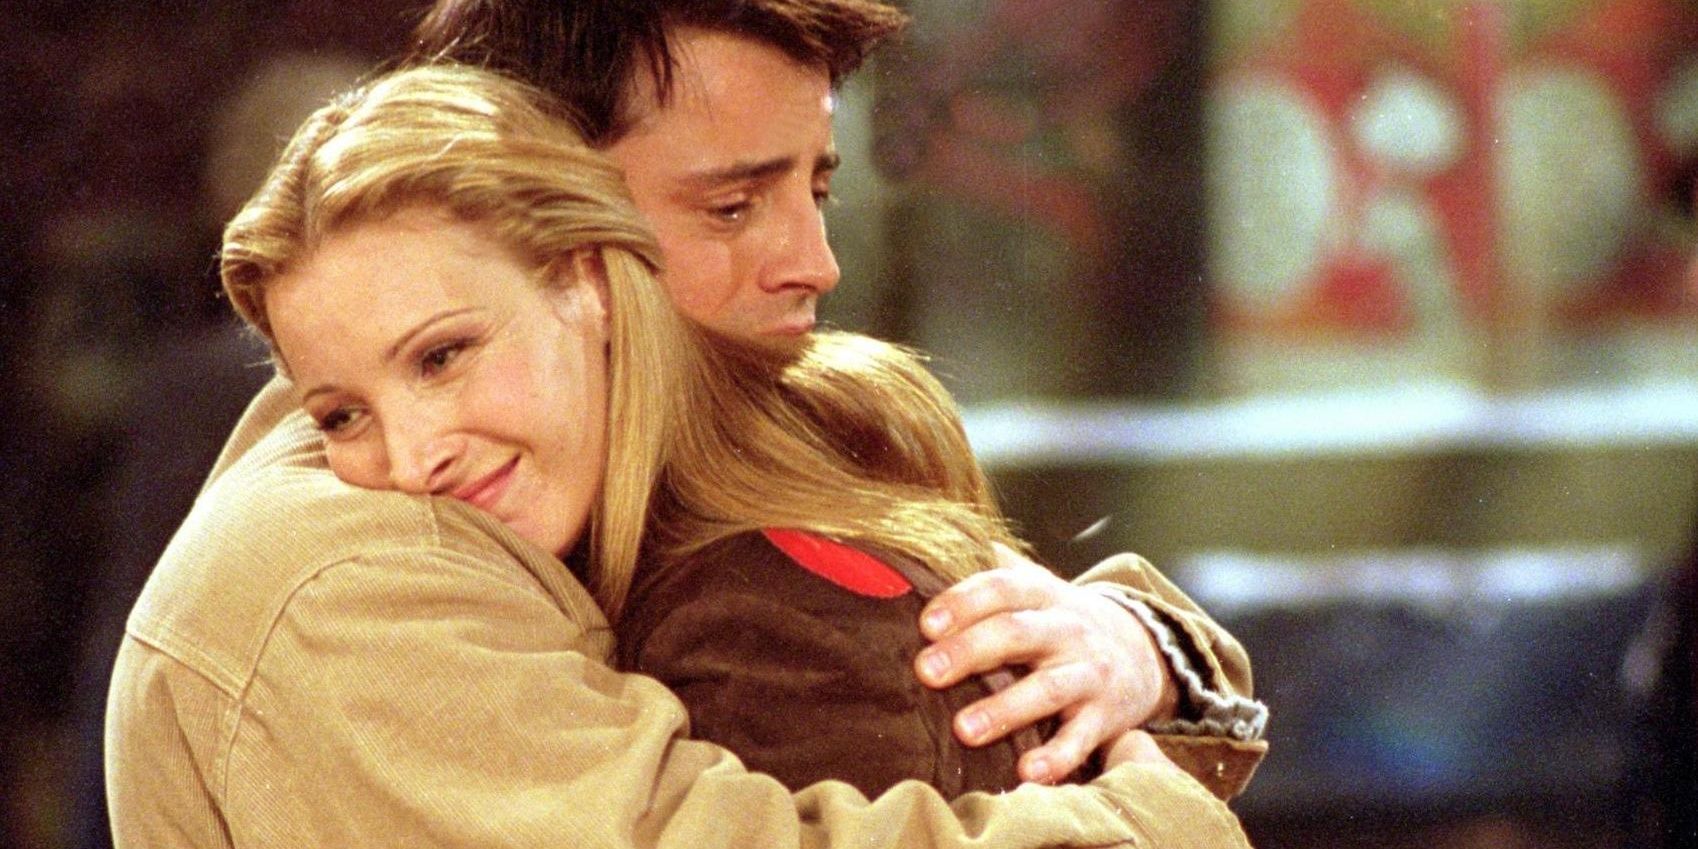 Phoebe and Joey hugging